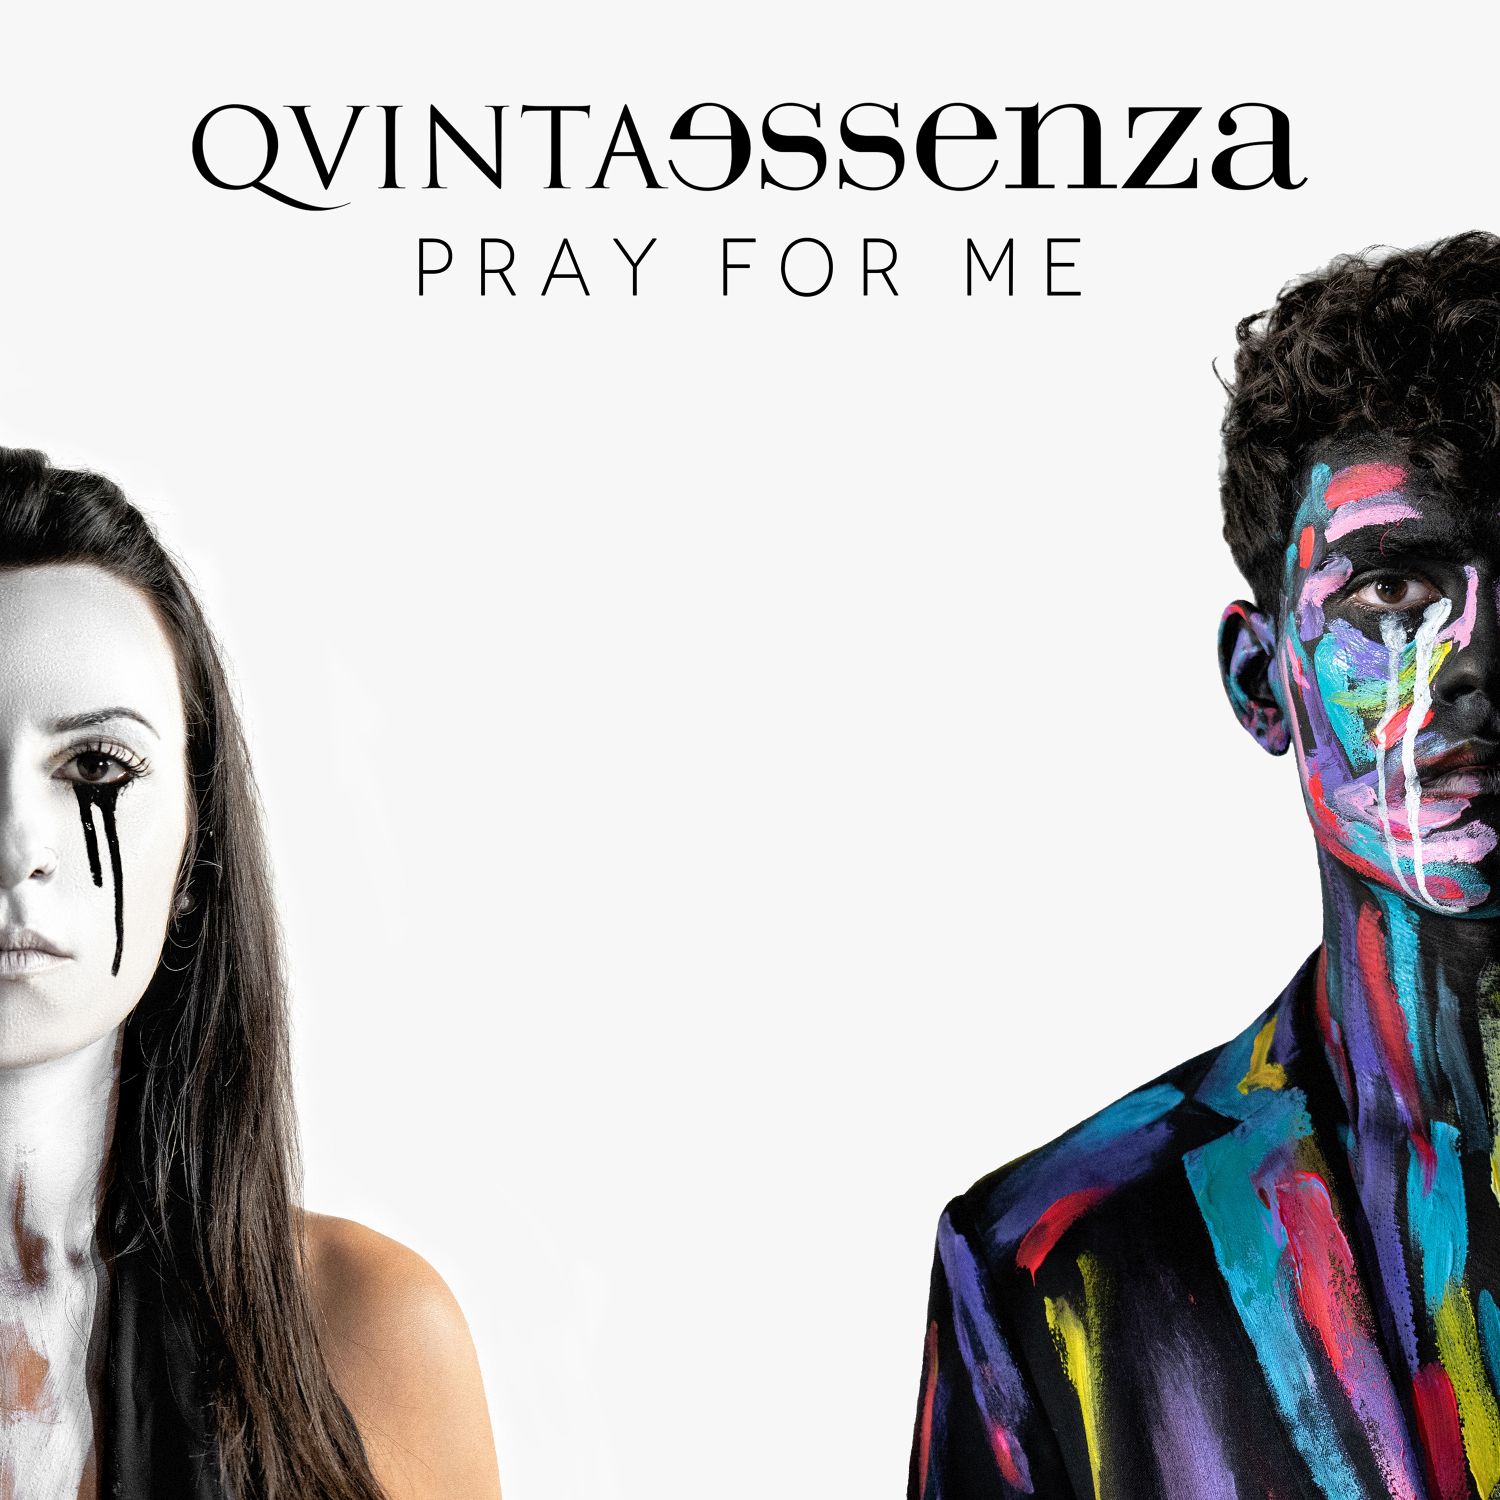 In uscita il secondo singolo della band siciliana QuintaEssenza “Pray for me”